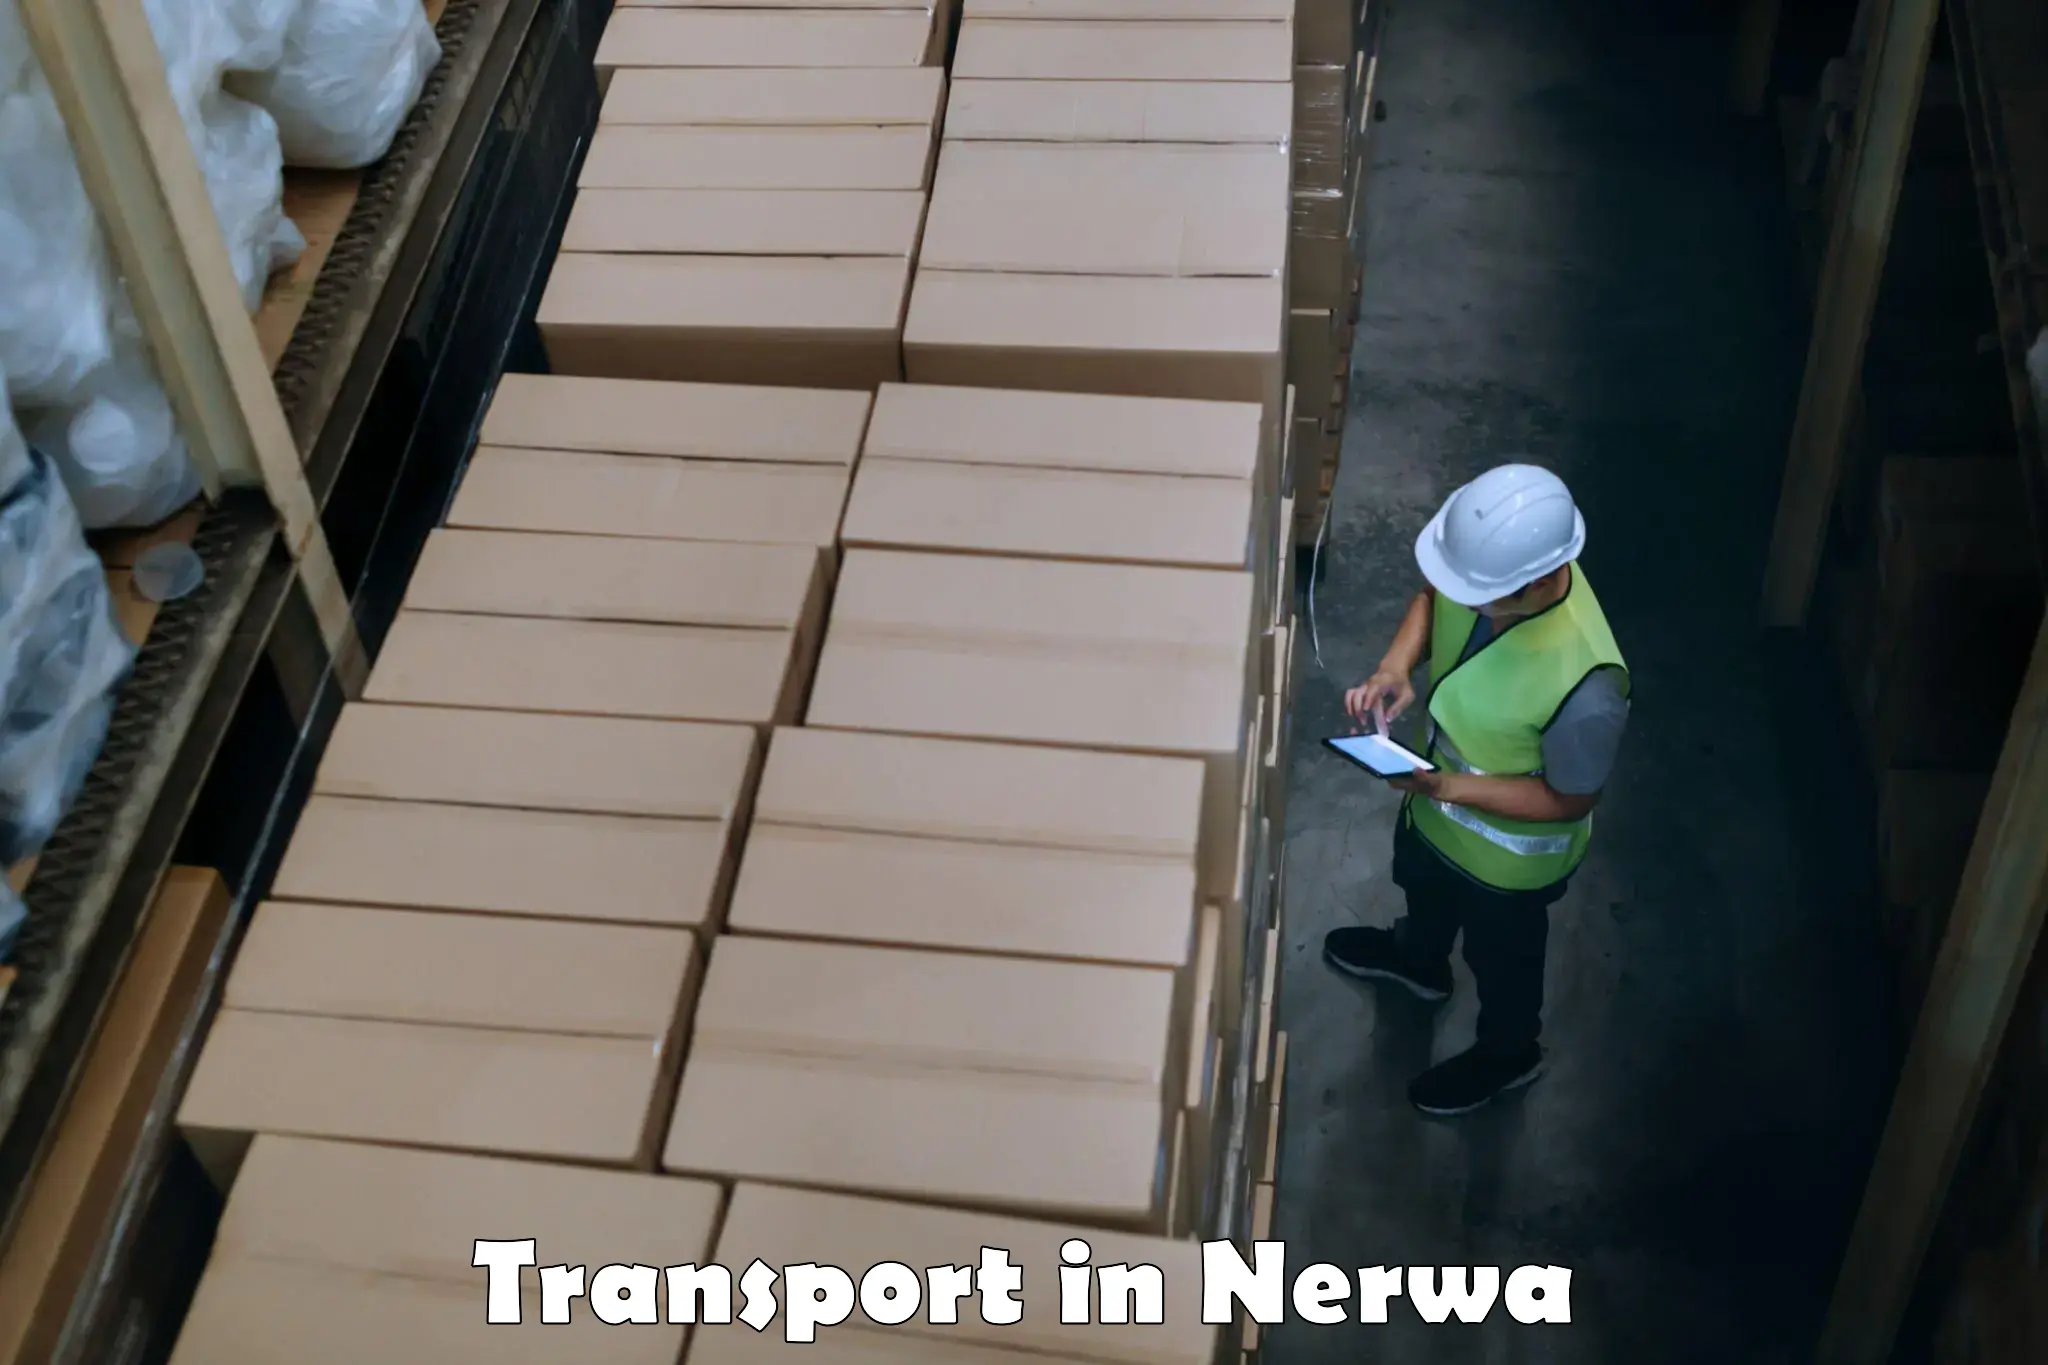 Cargo transportation services in Nerwa